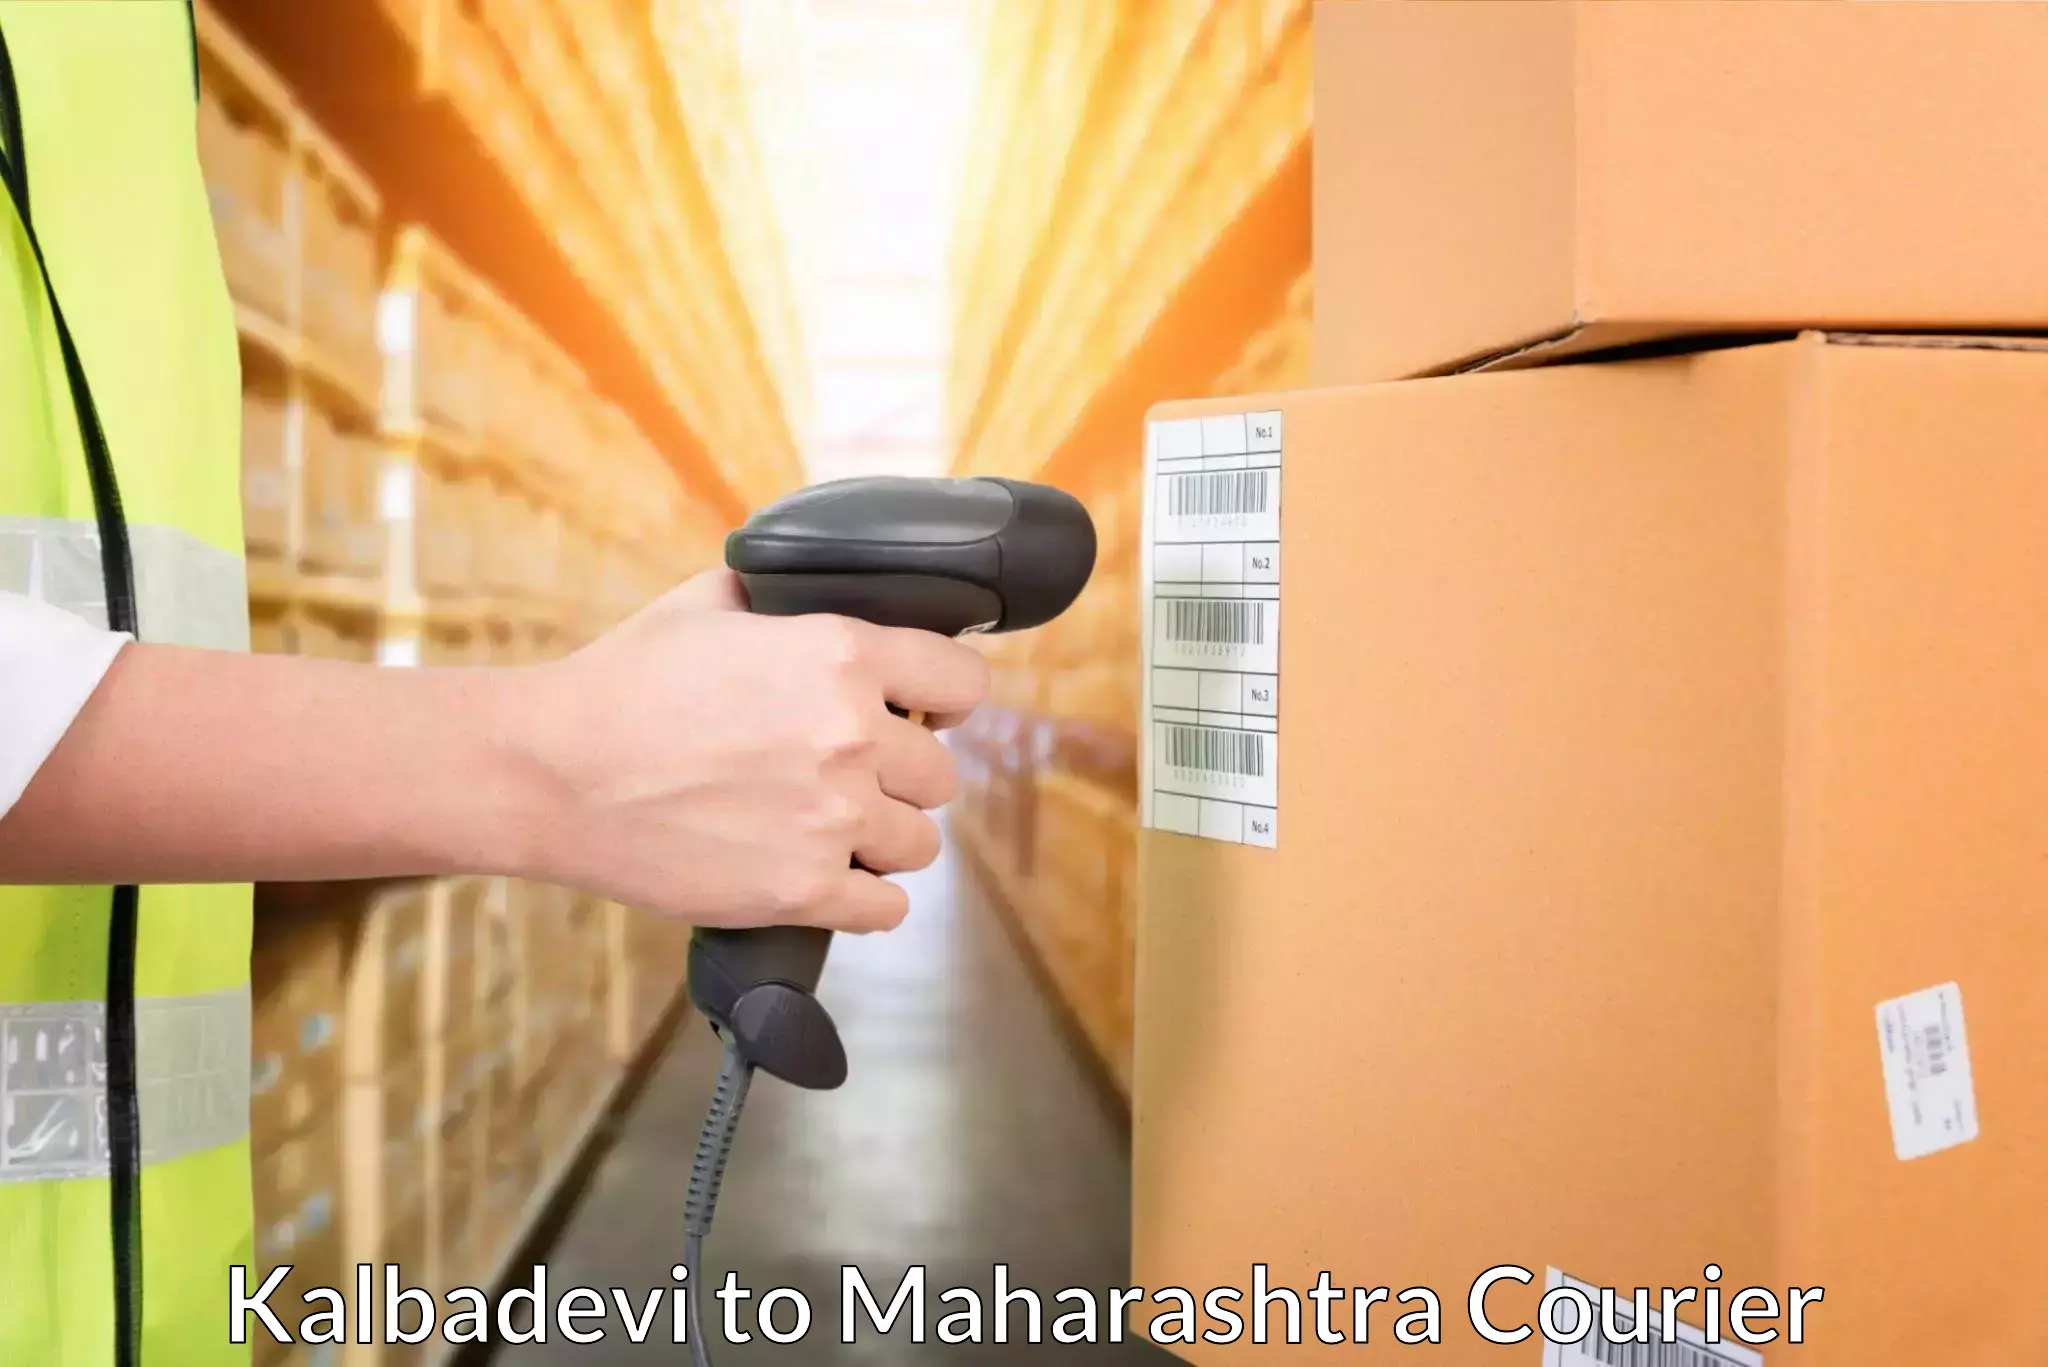 Express logistics providers Kalbadevi to Morshi